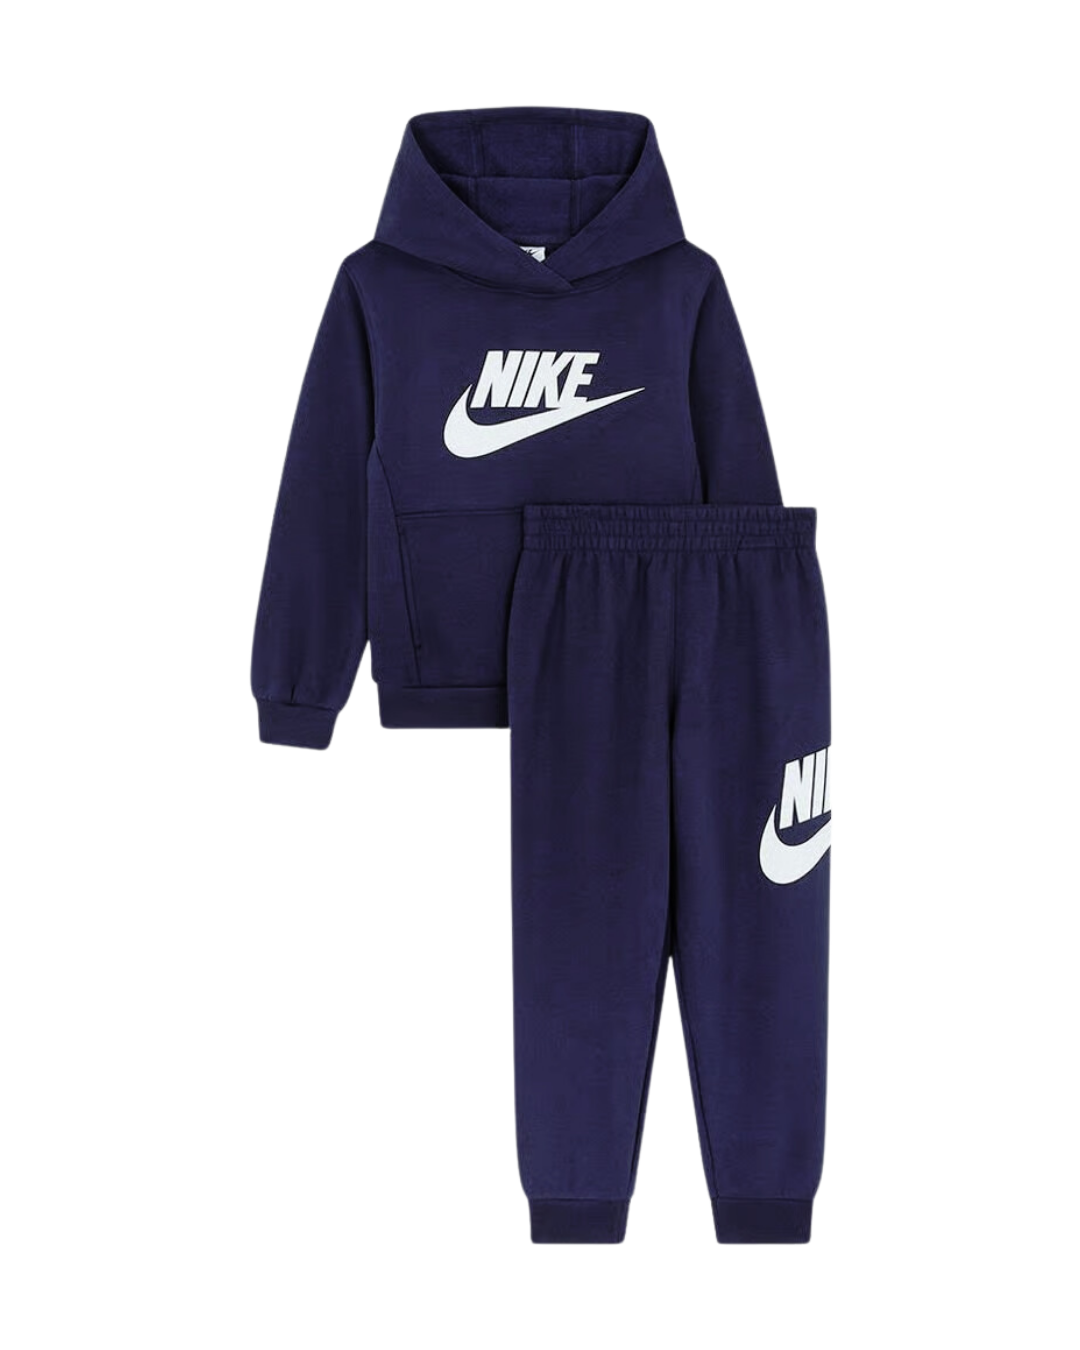 Set di tute da ginnastica Nike Club Fleece per bambini - Blu scuro/Bianco